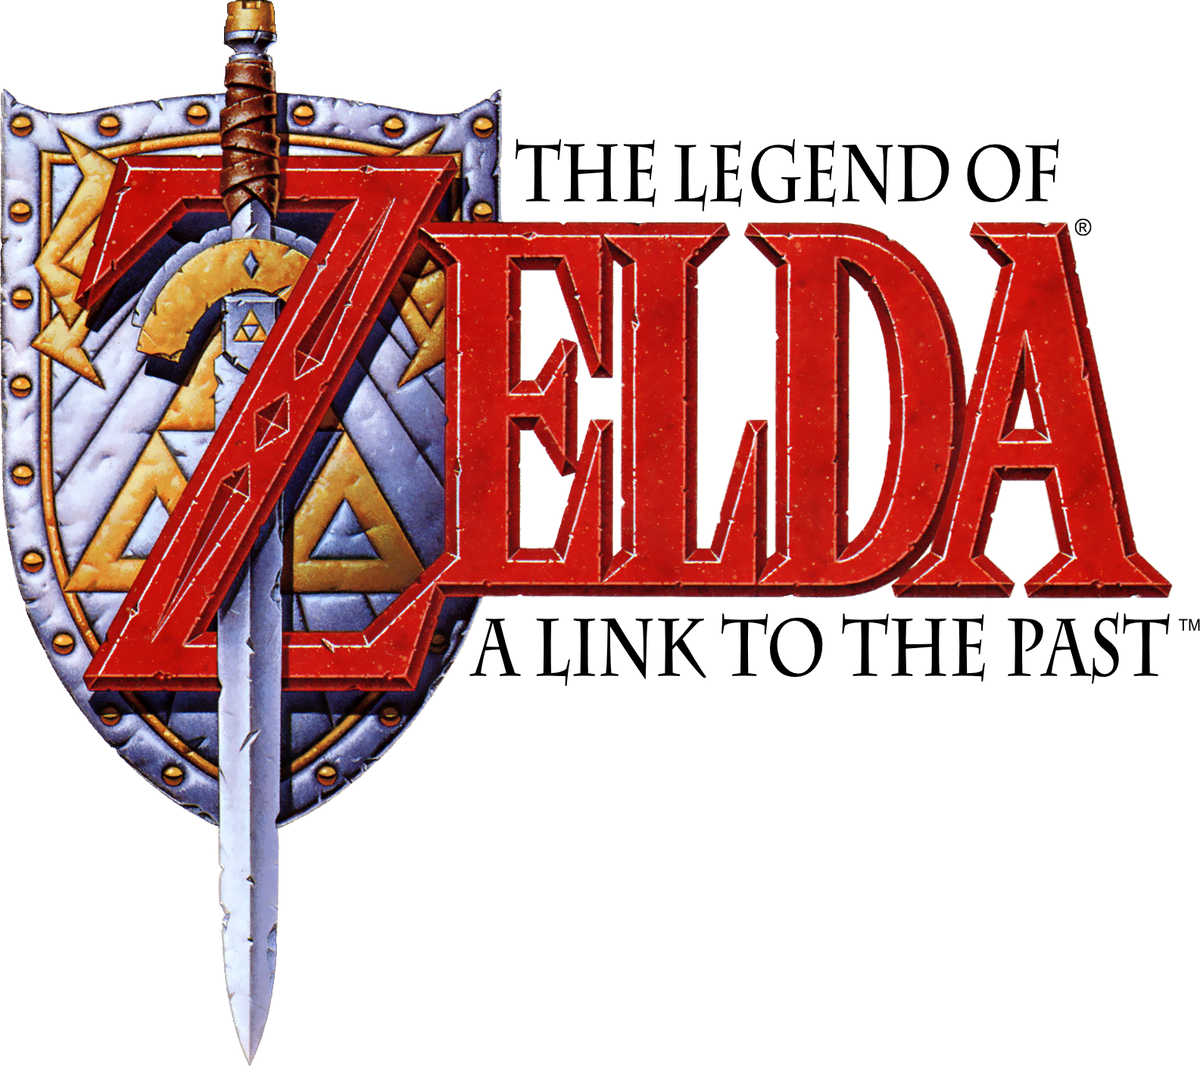 Top 10 Hardest Zelda Games To Speedrun